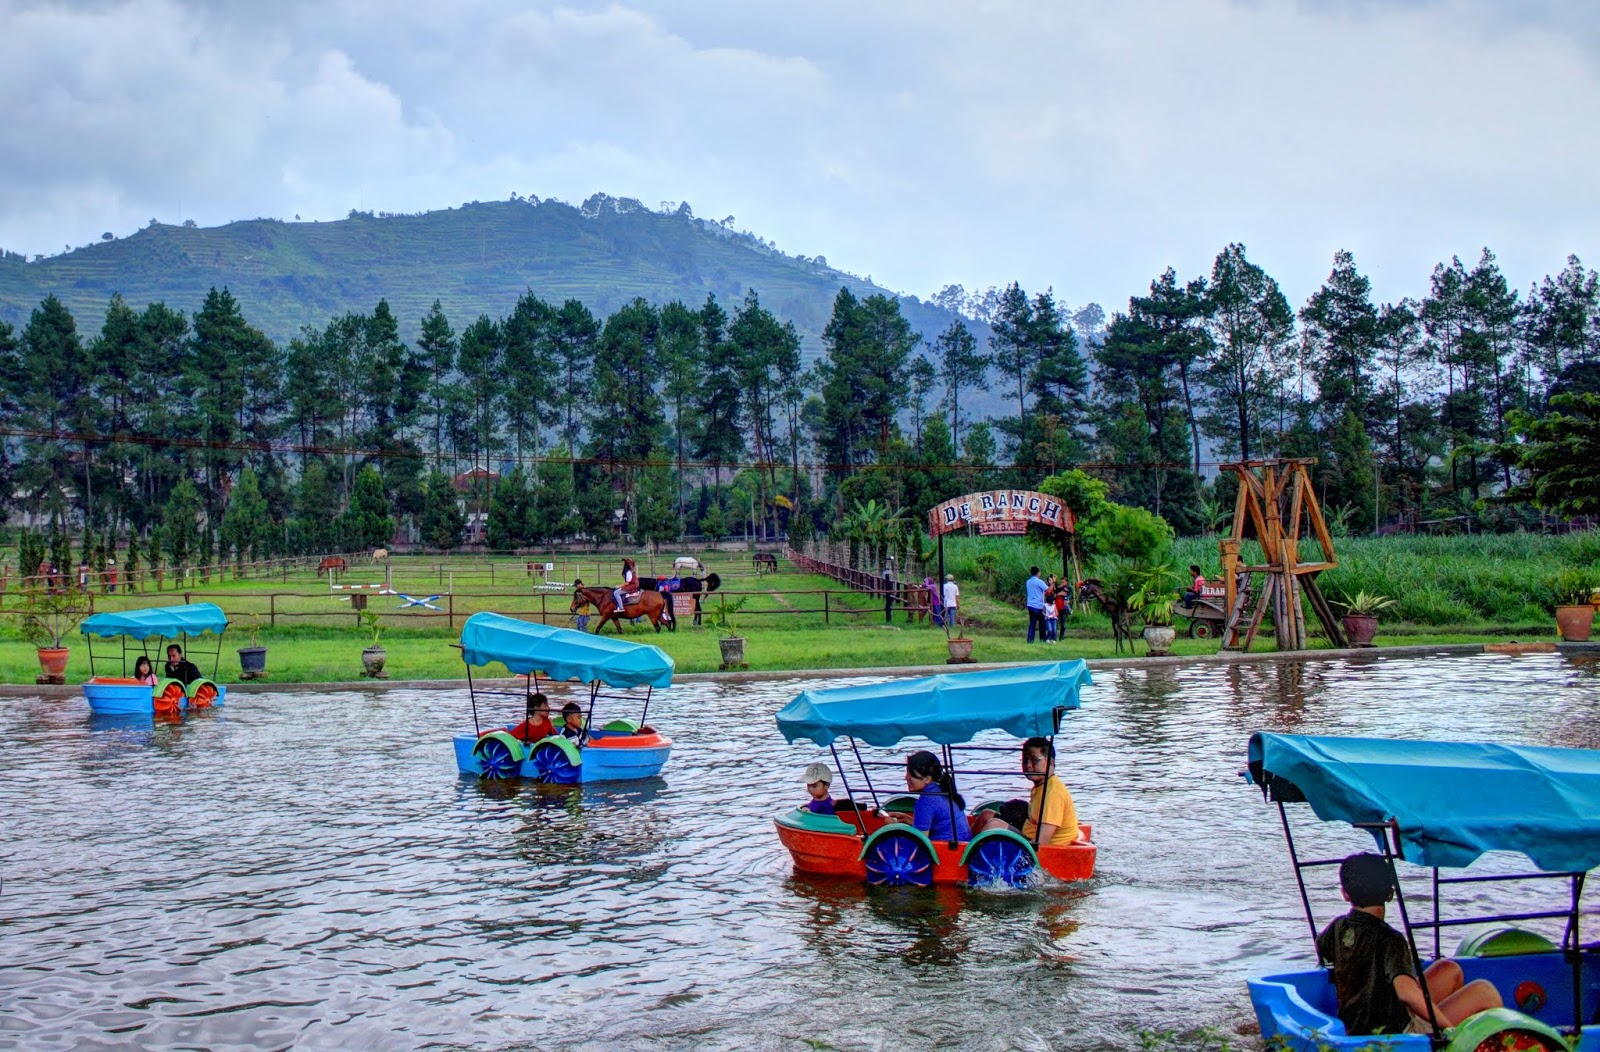 Tempat Wisata Di Bandung Kota Dan Harga Tiket Masuk